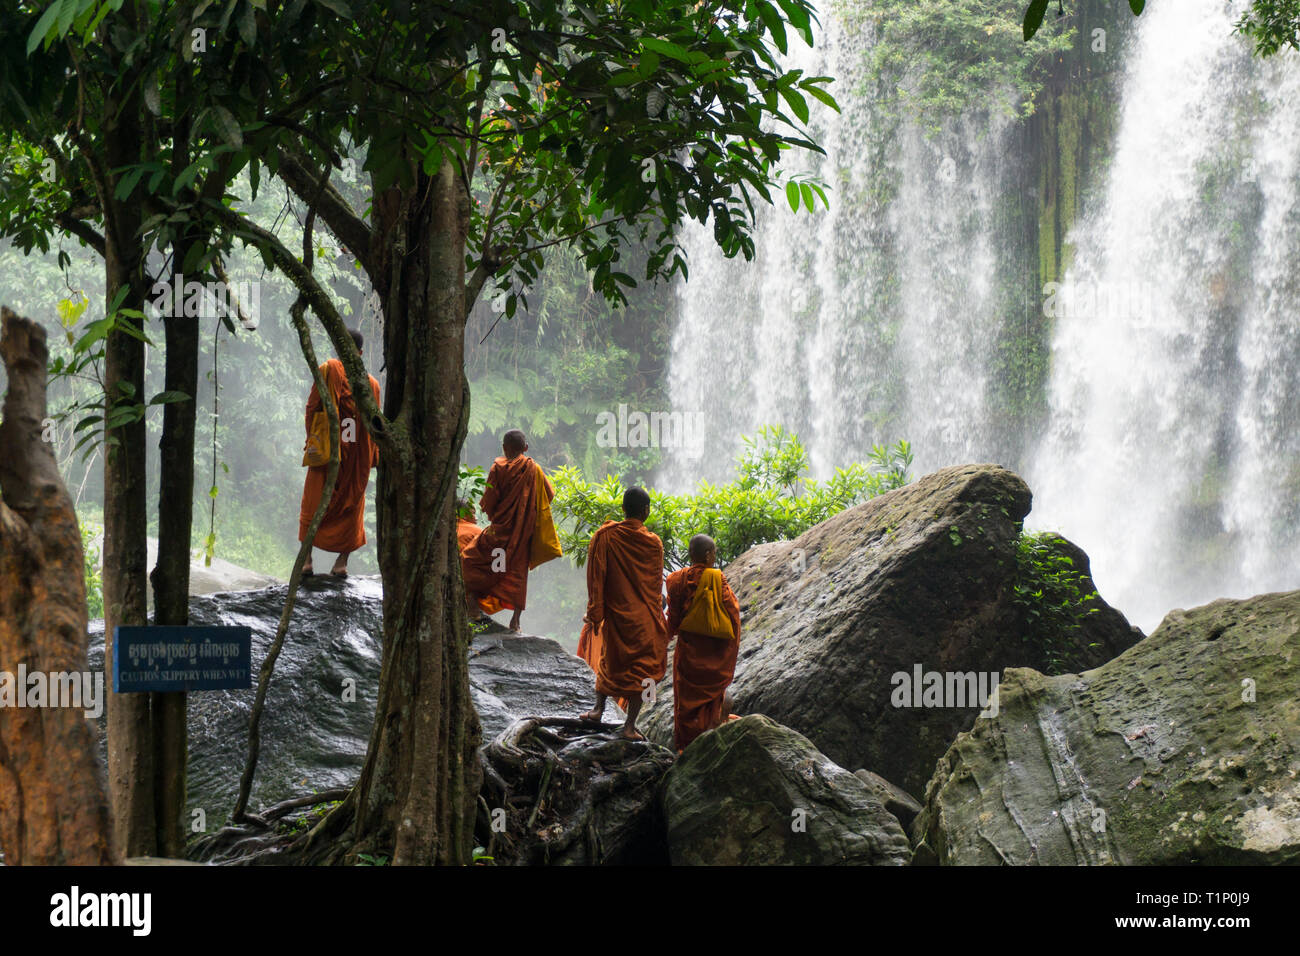 Eine Gruppe junger buddhistischer Mönche tragen die traditionelle orange Kleider stehen auf große Felsbrocken und genießen den Blick auf den Wasserfall Stockfoto